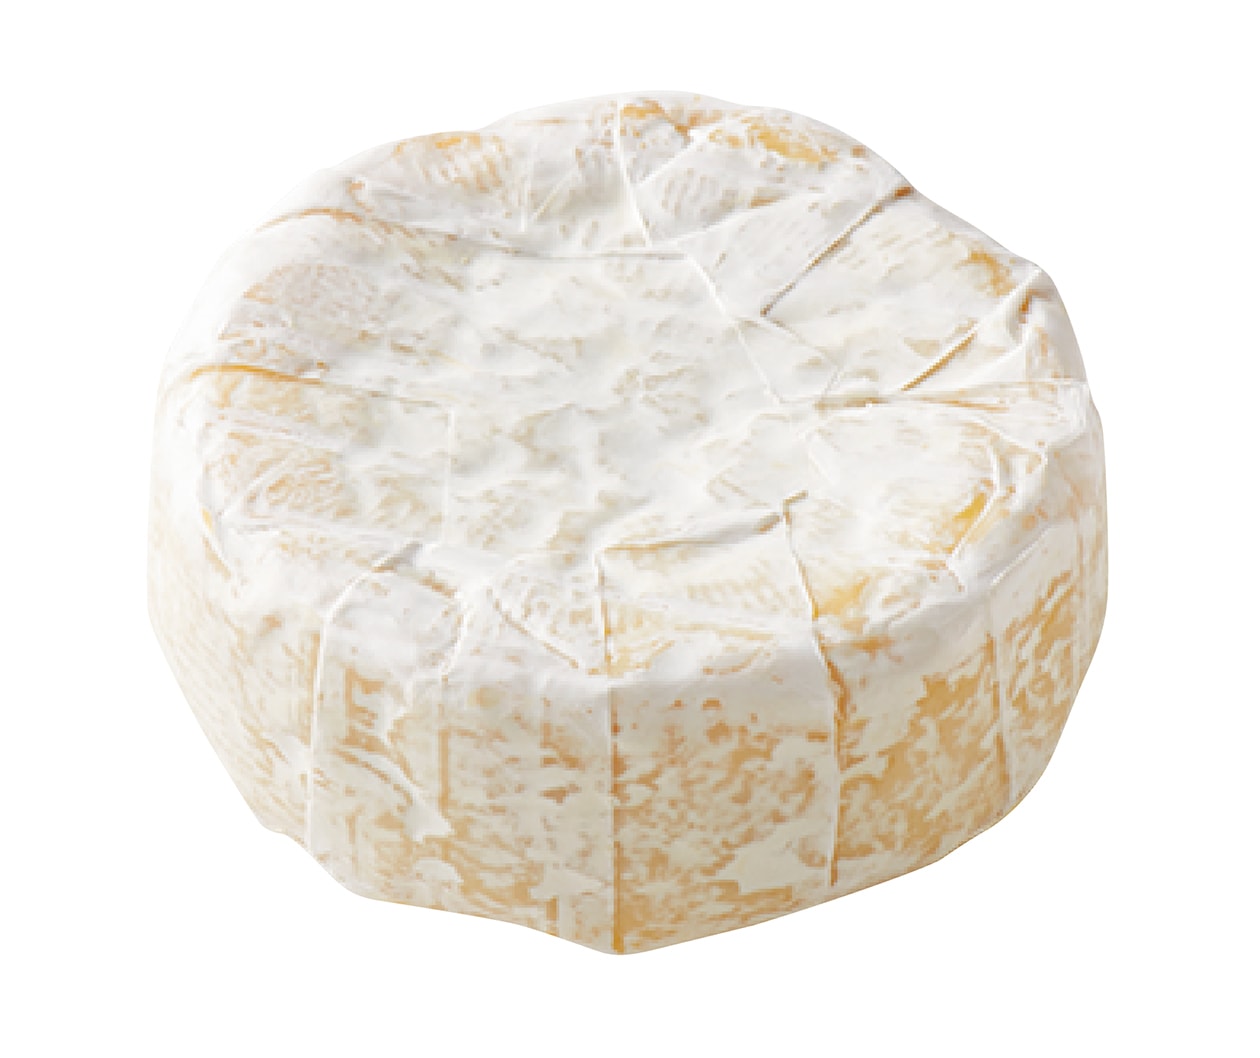 腸の健康や骨粗鬆症の予防にも、チーズはすぐれた栄養食【発酵食大図鑑】